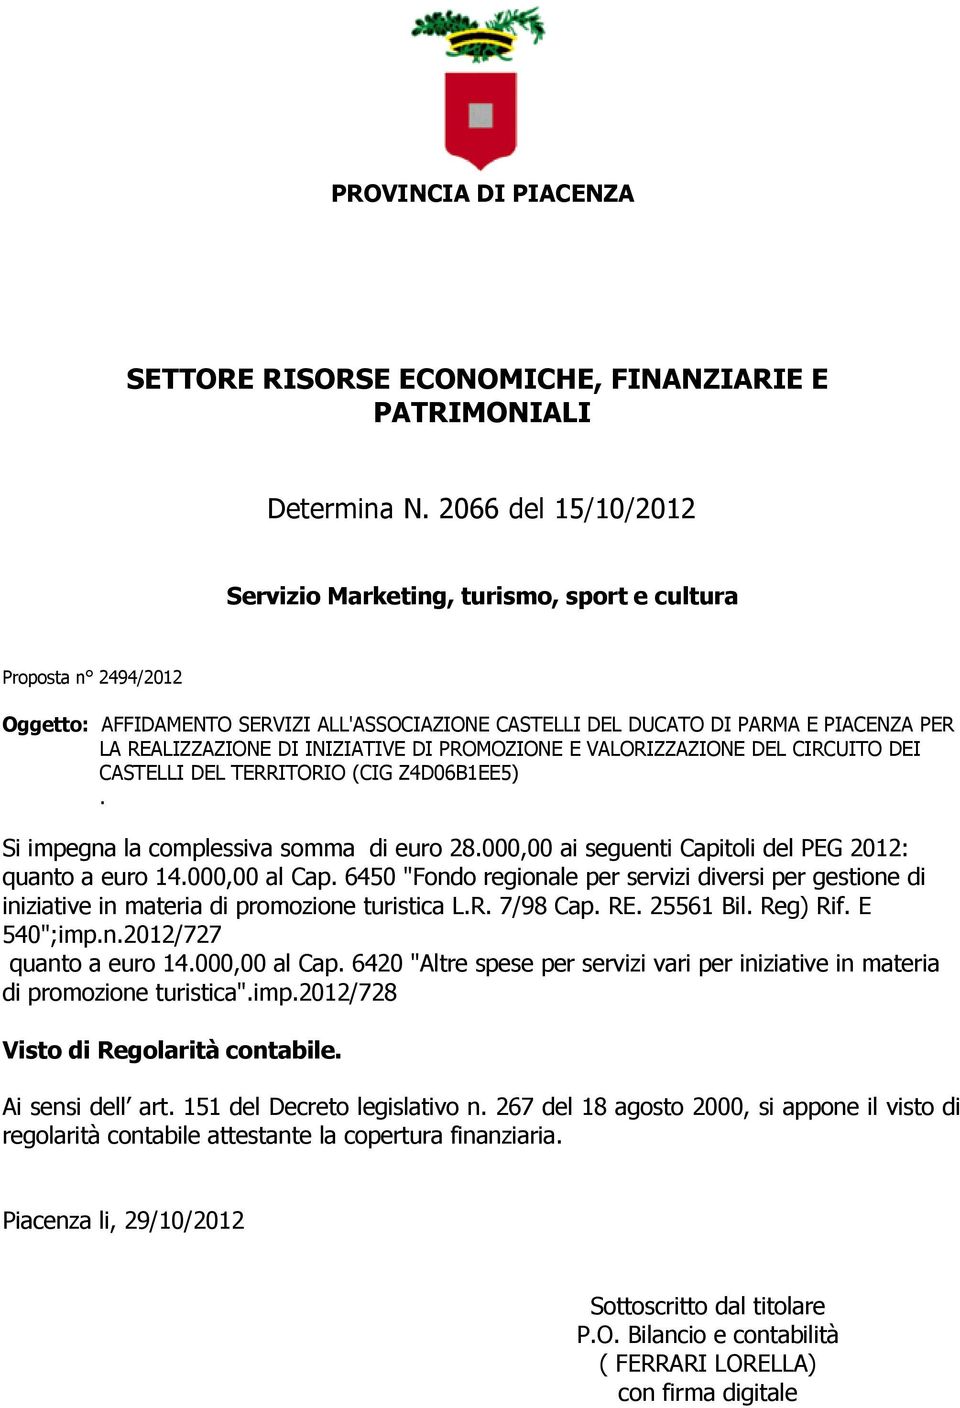 CIRCUITO DEI CASTELLI DEL TERRITORIO (CIG Z4D06B1EE5). Si impegna la complessiva somma di euro 28.000,00 ai seguenti Capitoli del PEG 2012: quanto a euro 14.000,00 al Cap.